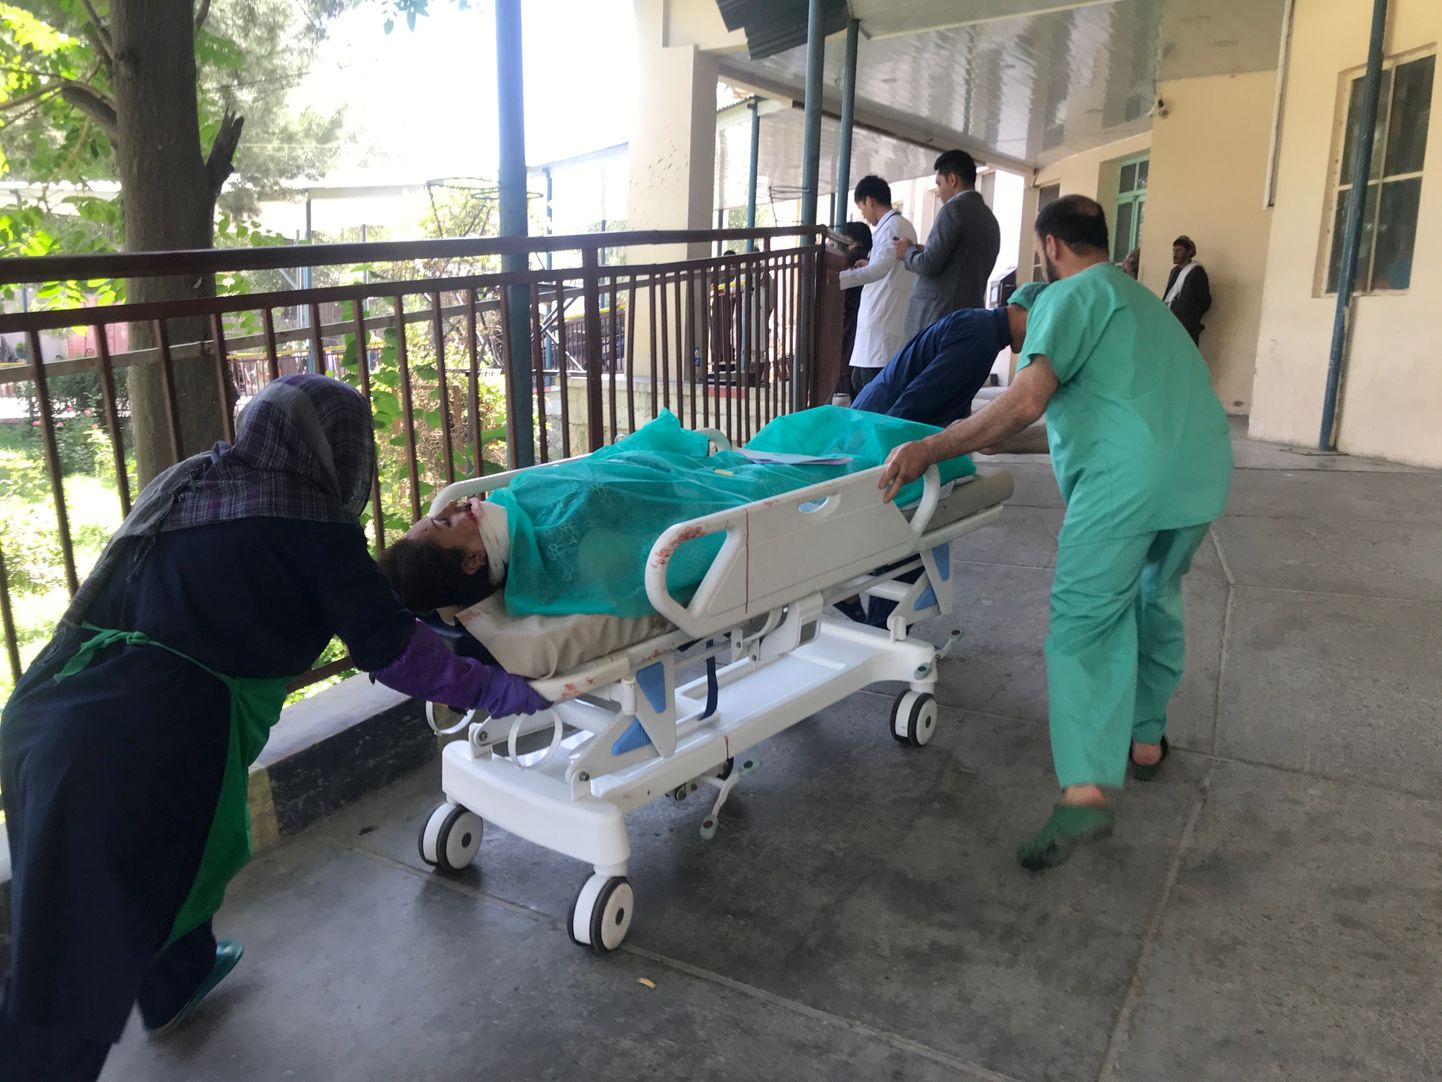 Kabuli plahvatuses kannatada saanud inimene toimetati haiglasse.